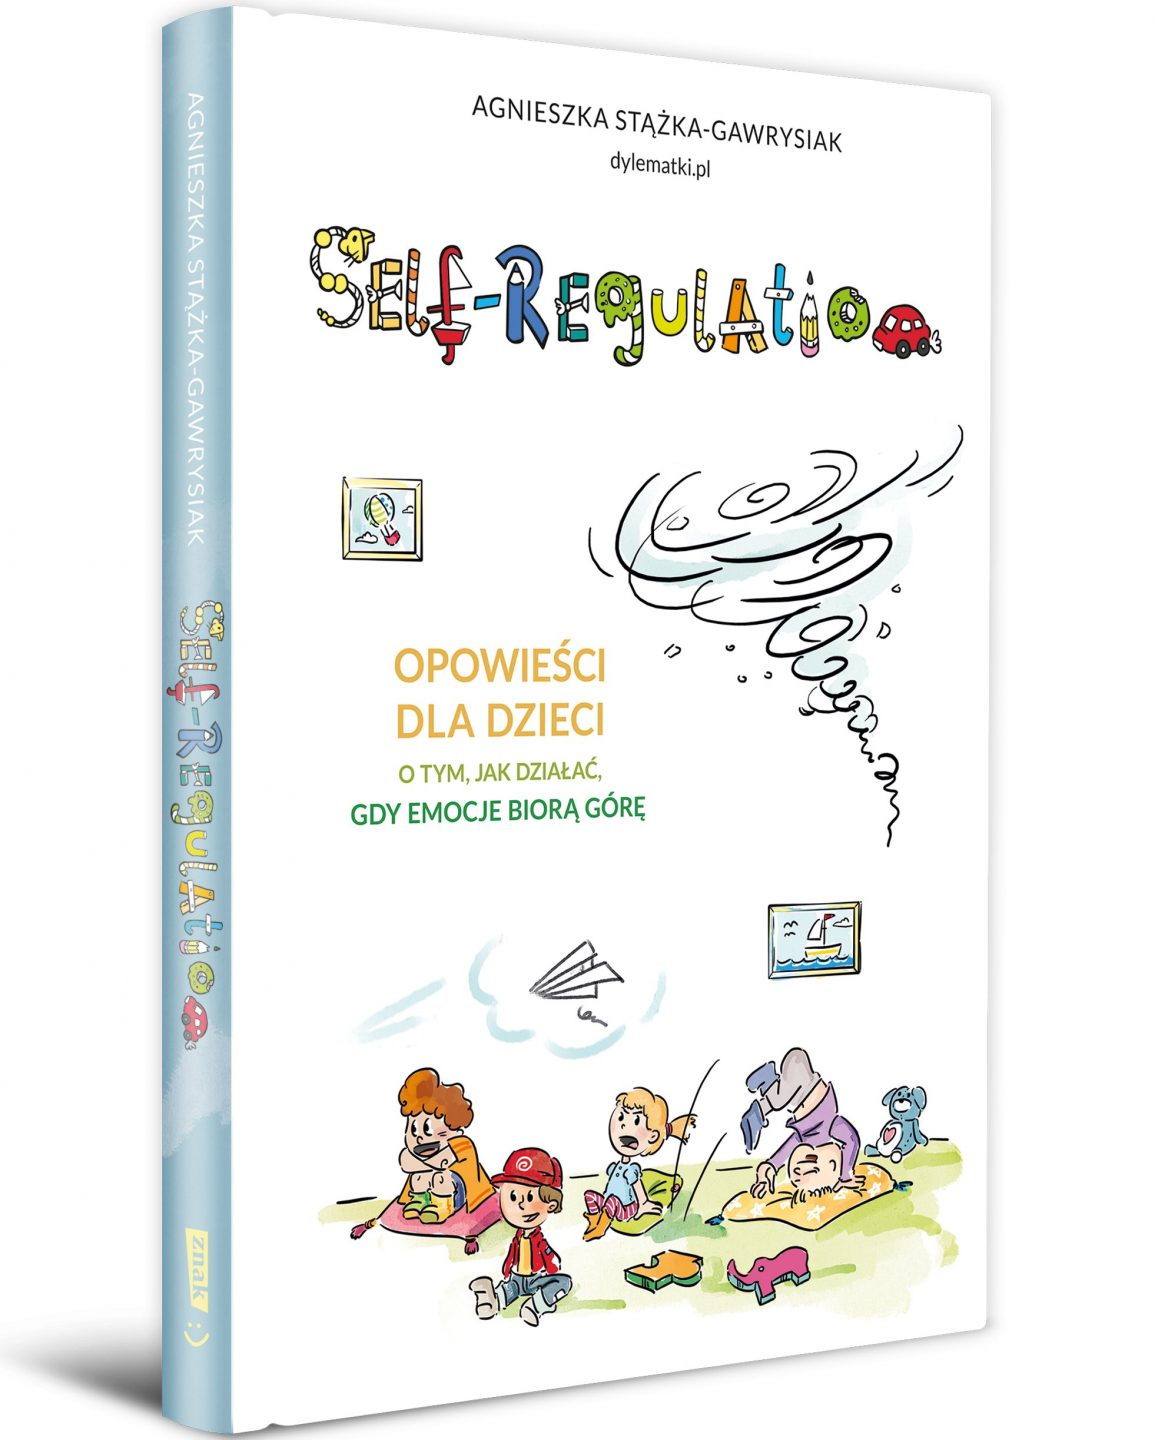 Okładka książki: Self-regulation. Opowieści dla dzieci